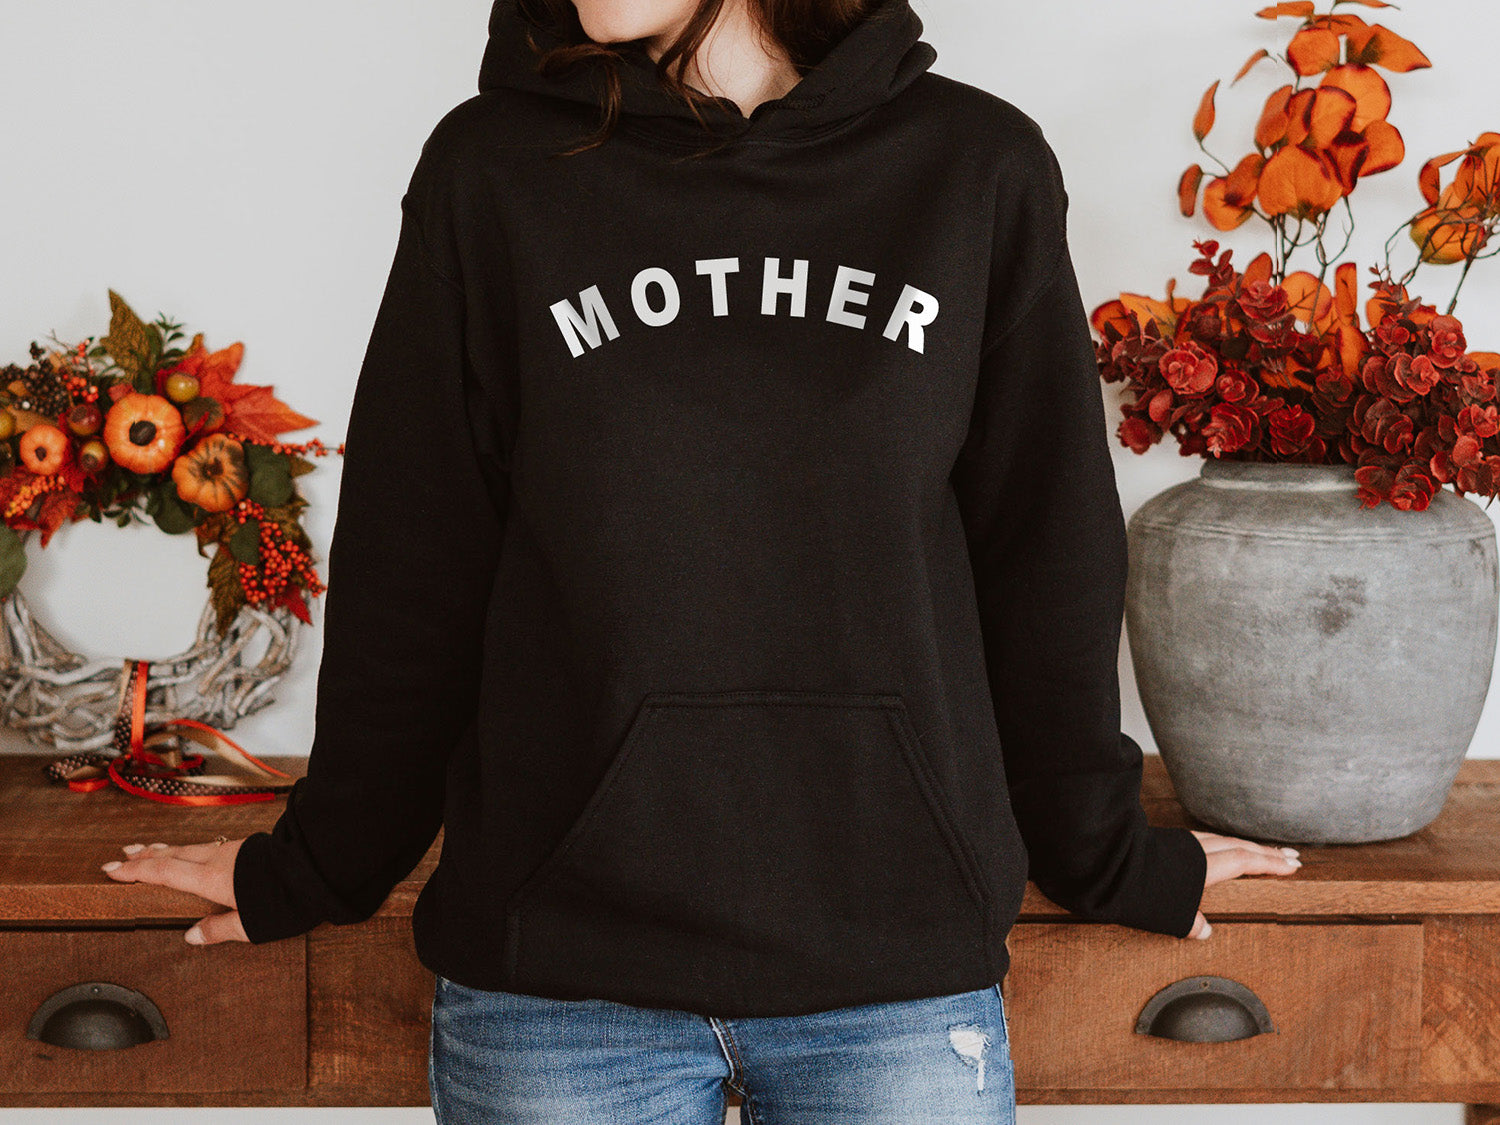 MOTHER Hoodie - Minimalistic Mother Design Printed Hoodie